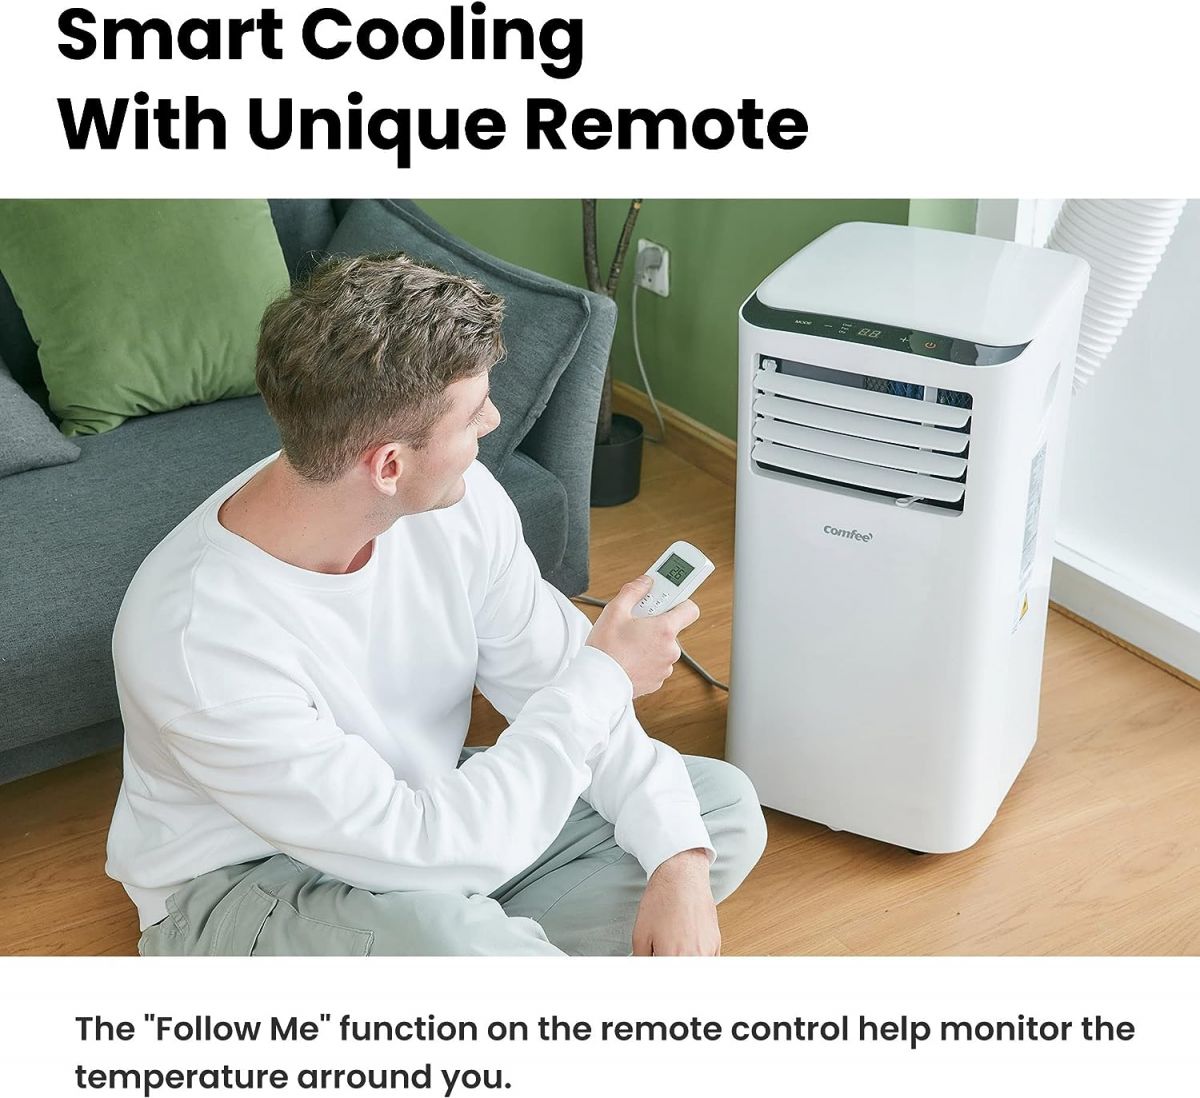 Air conditioner Comfee MPPH-09CRN7